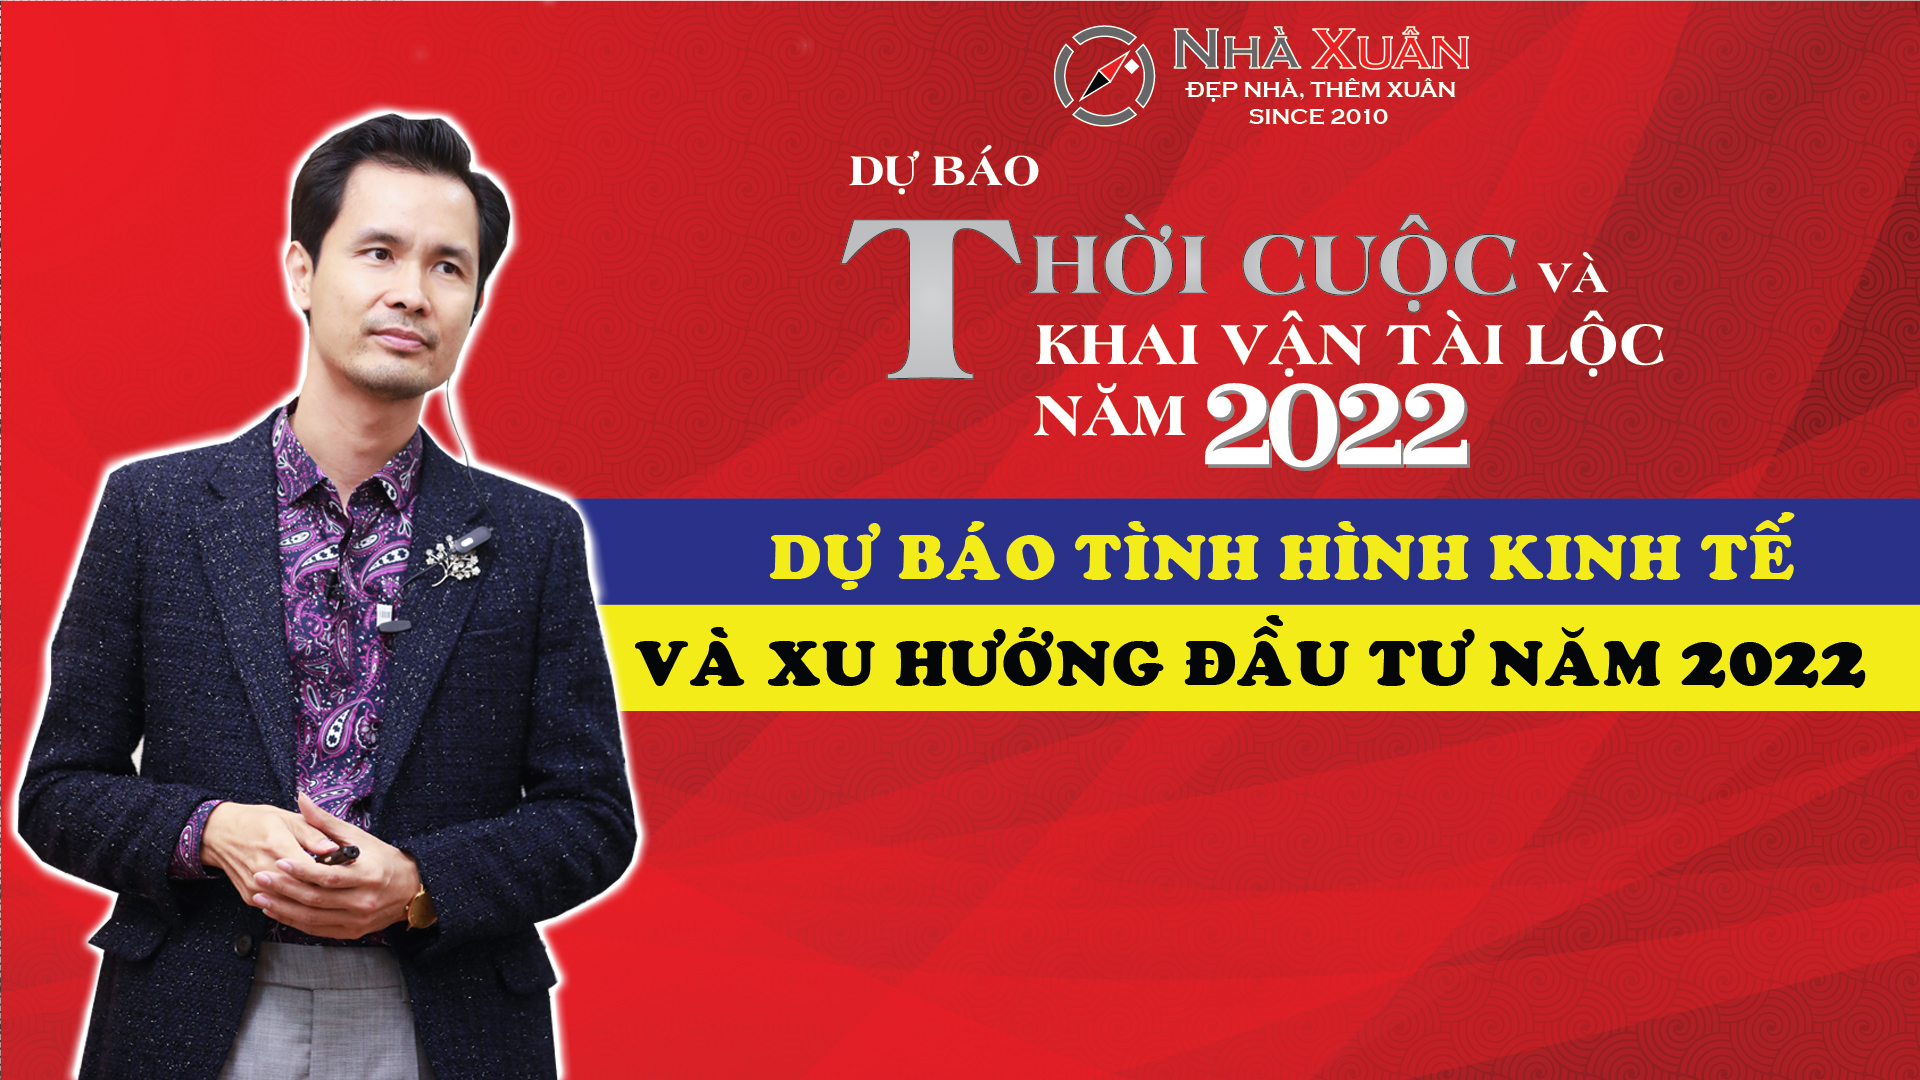 DỰ BÁO TÌNH HÌNH KINH TẾ VÀ XU HƯỚNG ĐẦU TƯ NĂM 2022 | Chuyên gia Phong thủy Phạm Cương